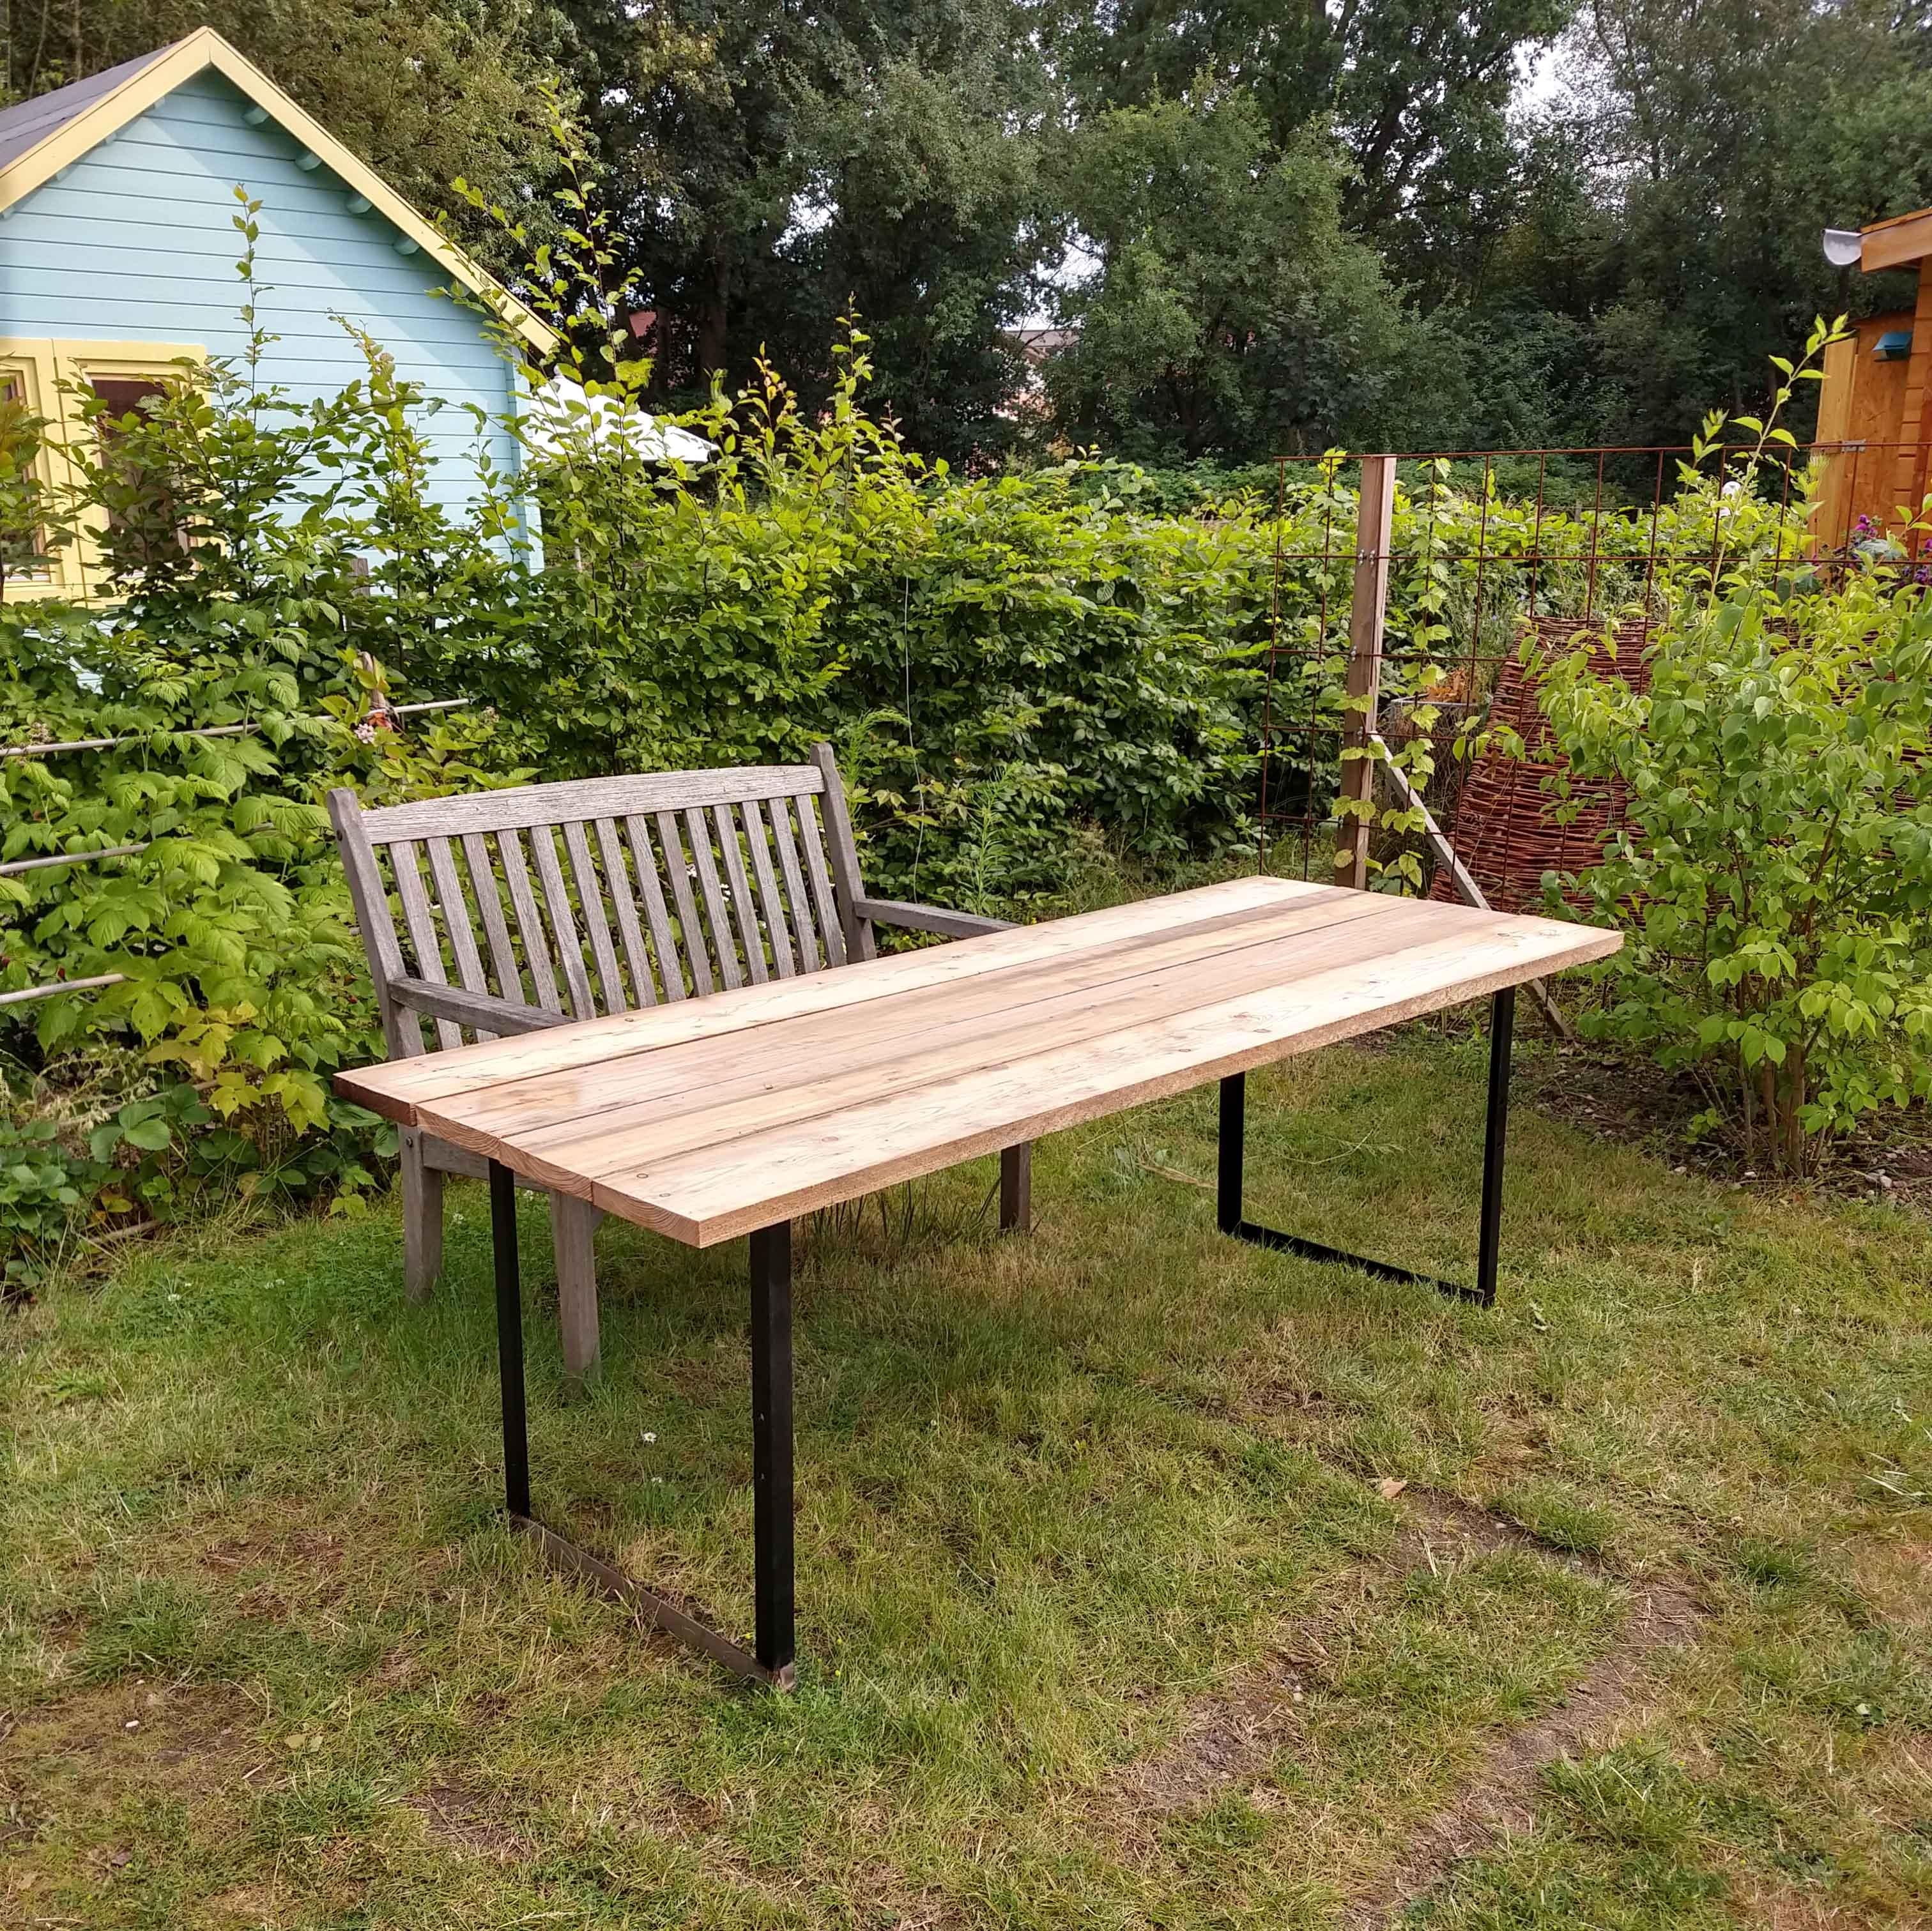 Das #DIY-Projekt #Gartentisch ist fast fertig – fehlt noch die passende Bank! #Garten  